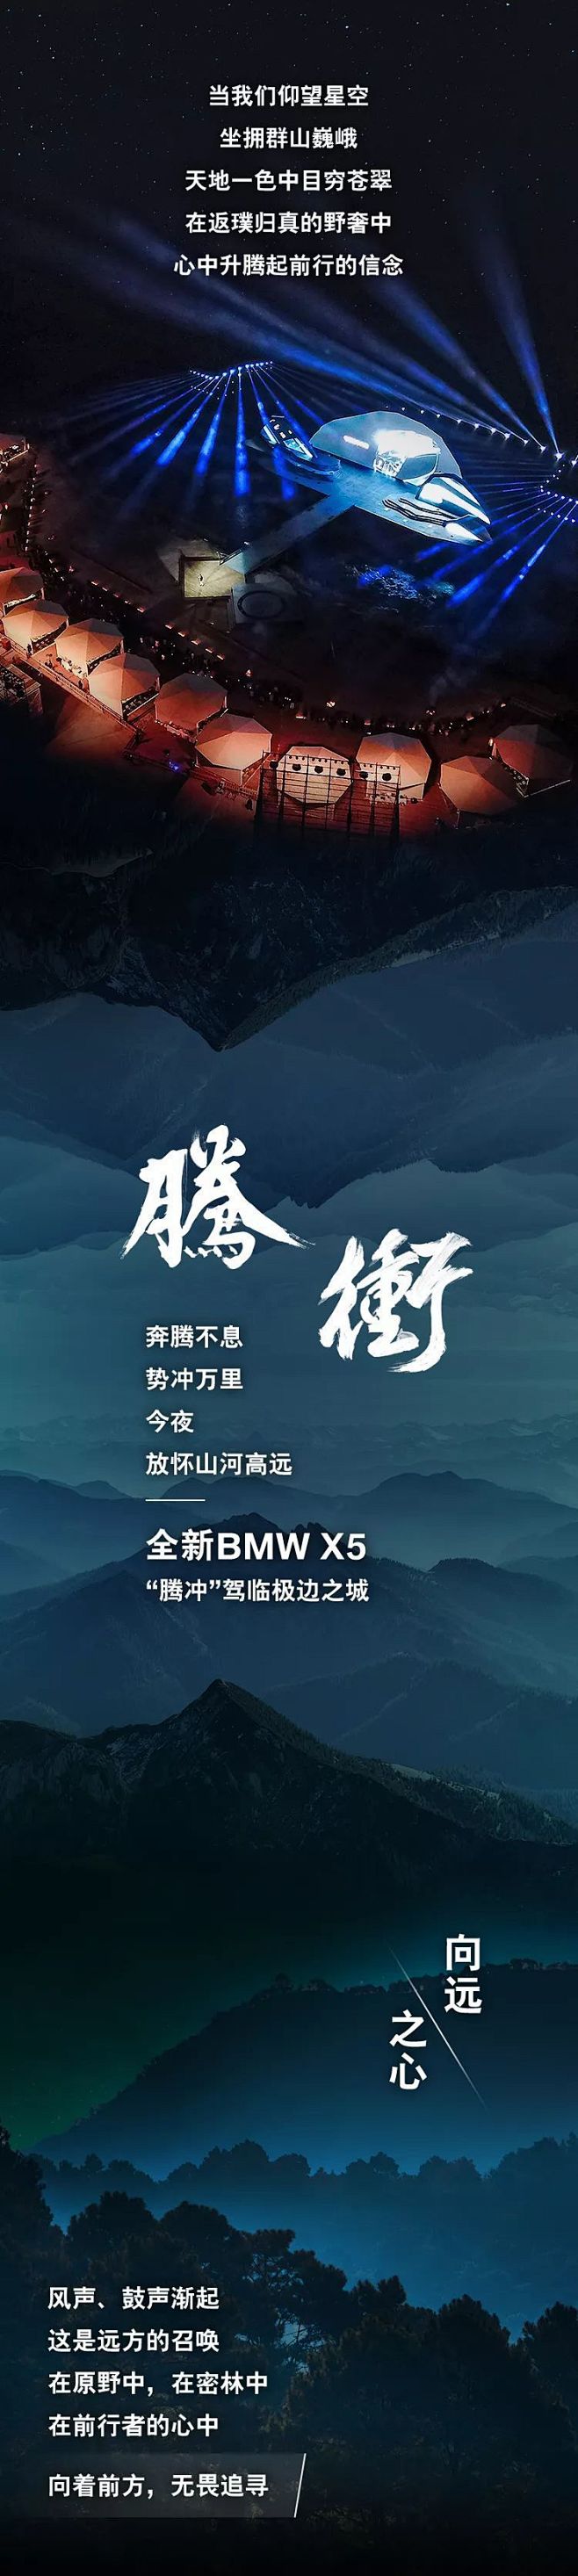 天地盛宴，全新BMW X5瞩目登场 : ...